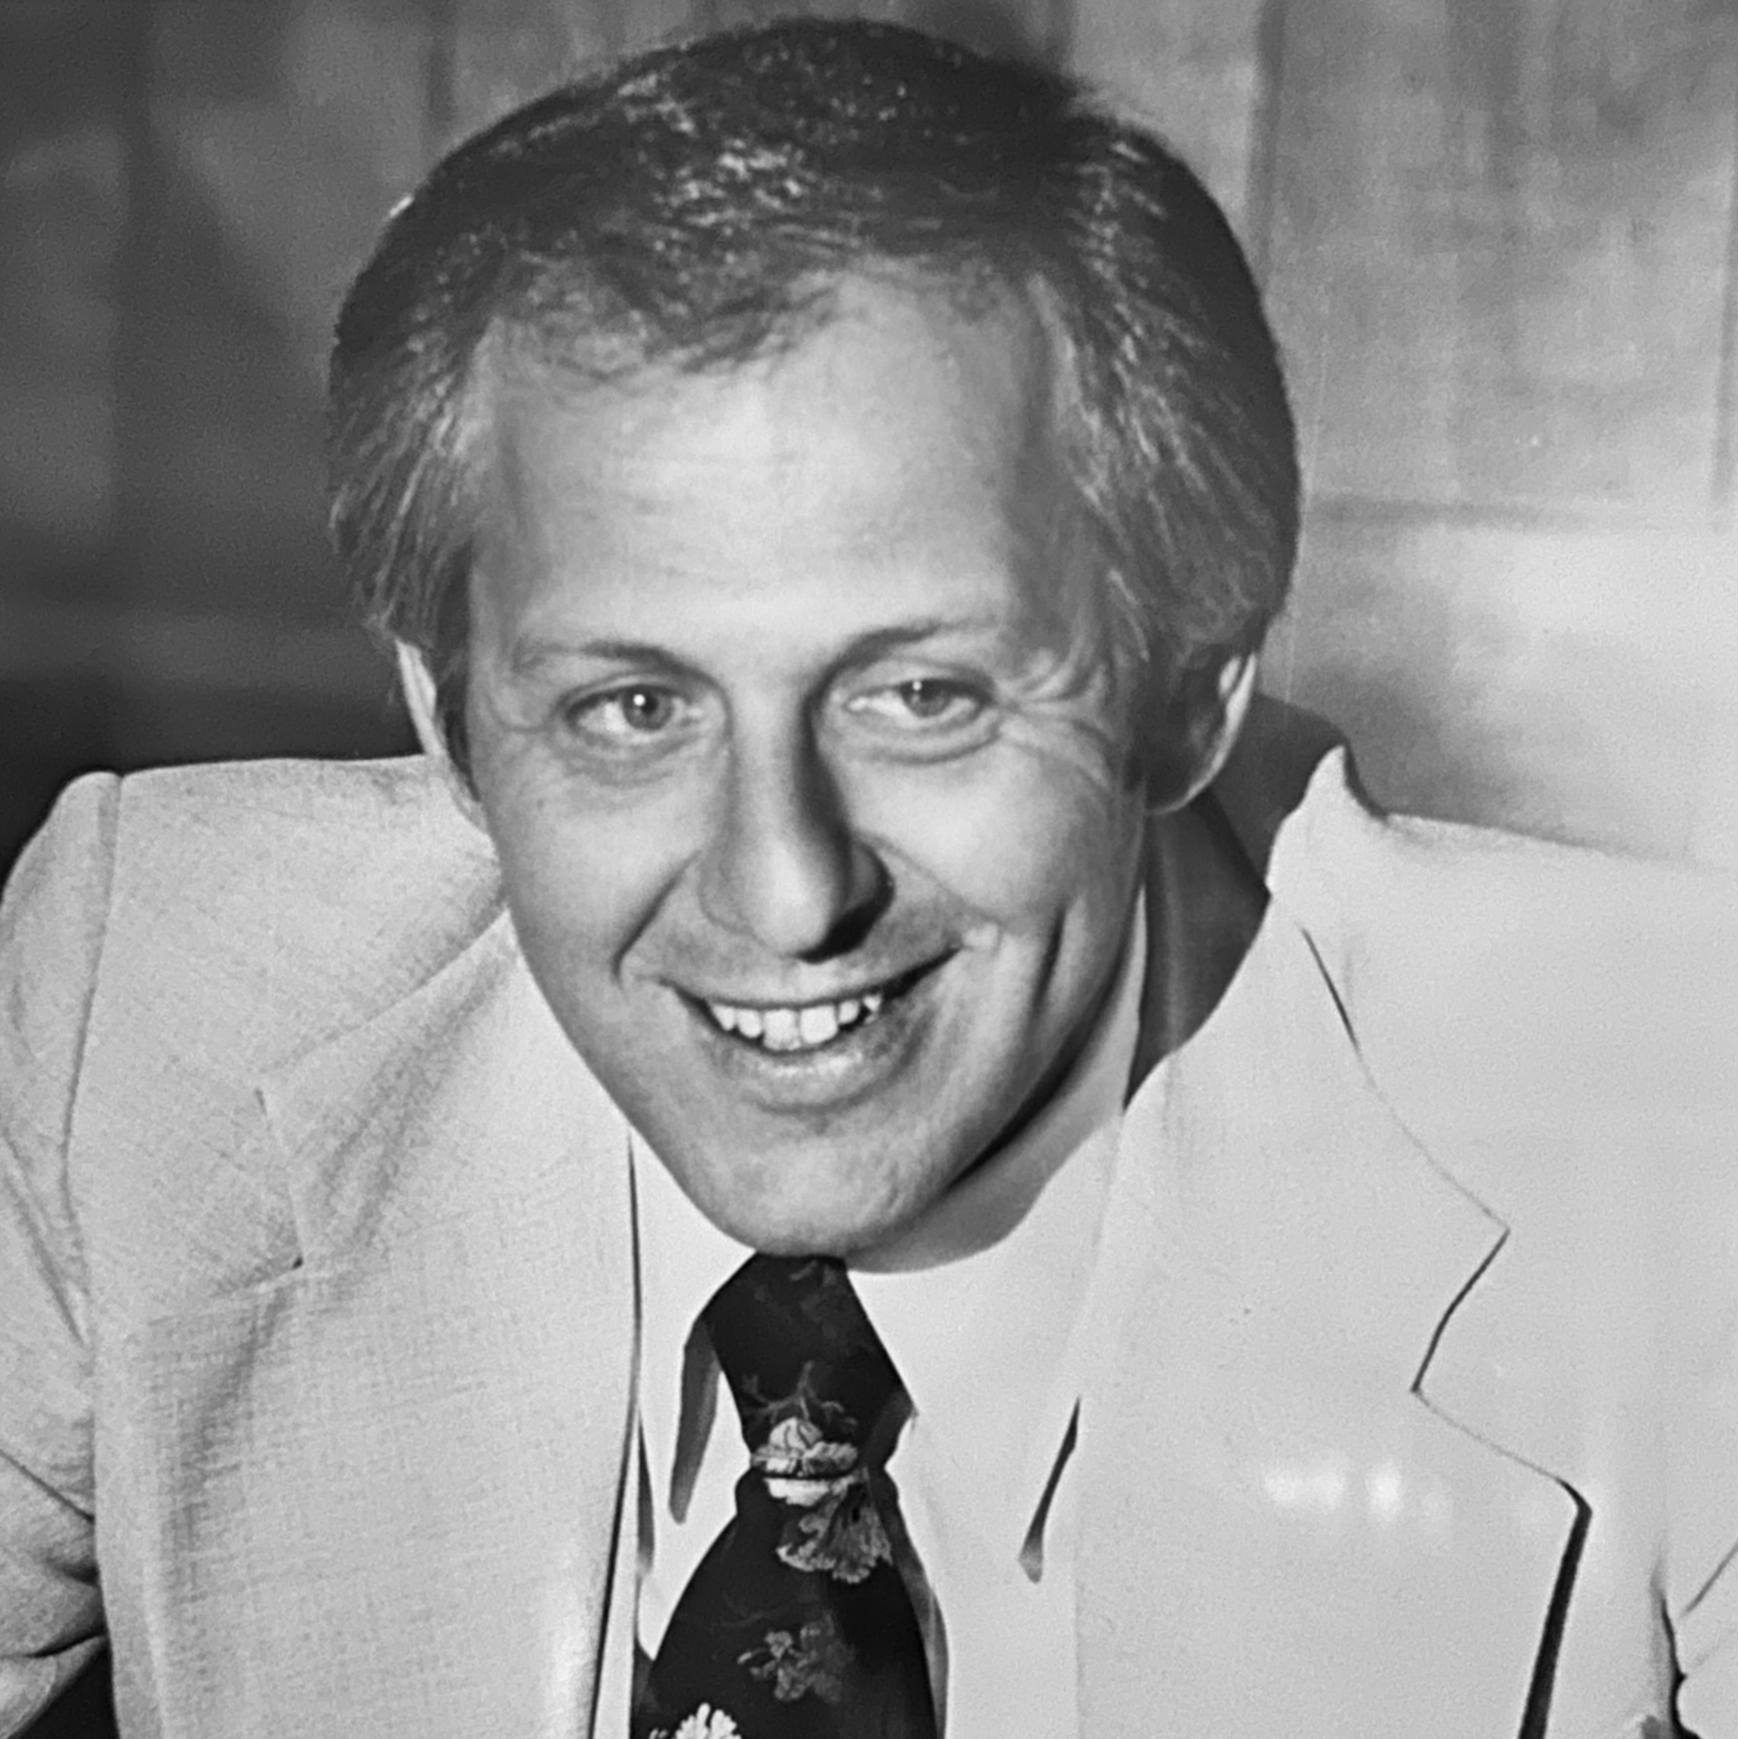 Dan Neuenswander, 1979-1984